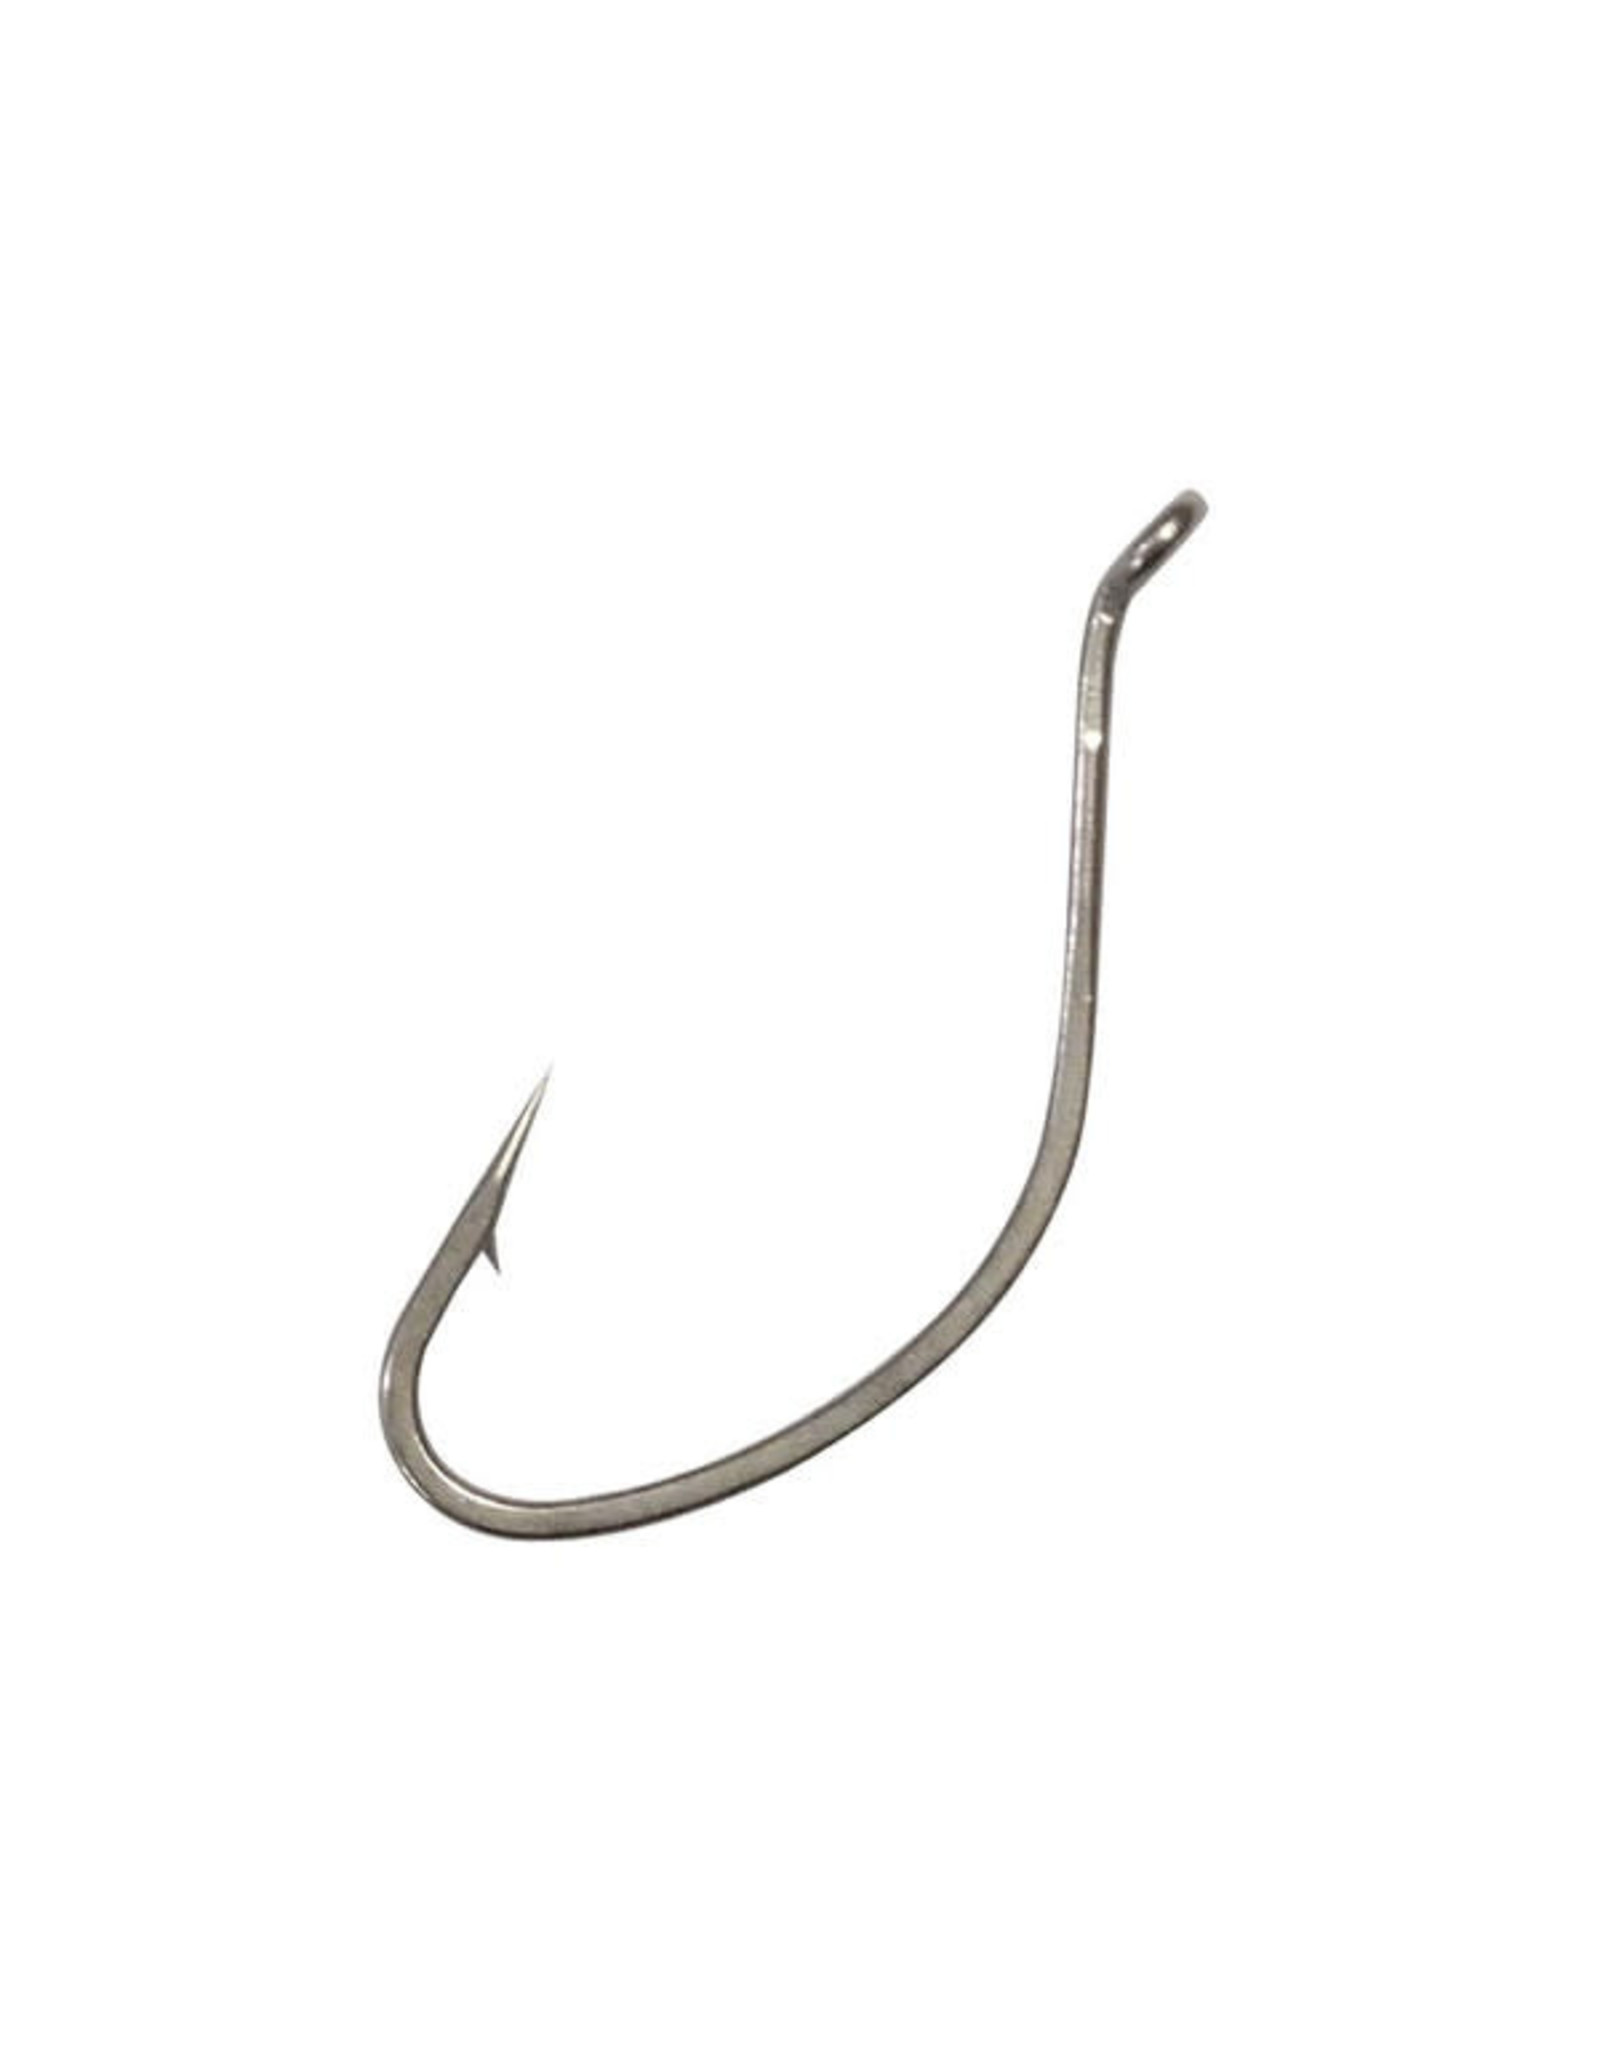 Gamakatsu Gamakatsu 262107 Trout Worm Hook Size 6, Needle Point, Ringed Eye  Bronze, 10pk